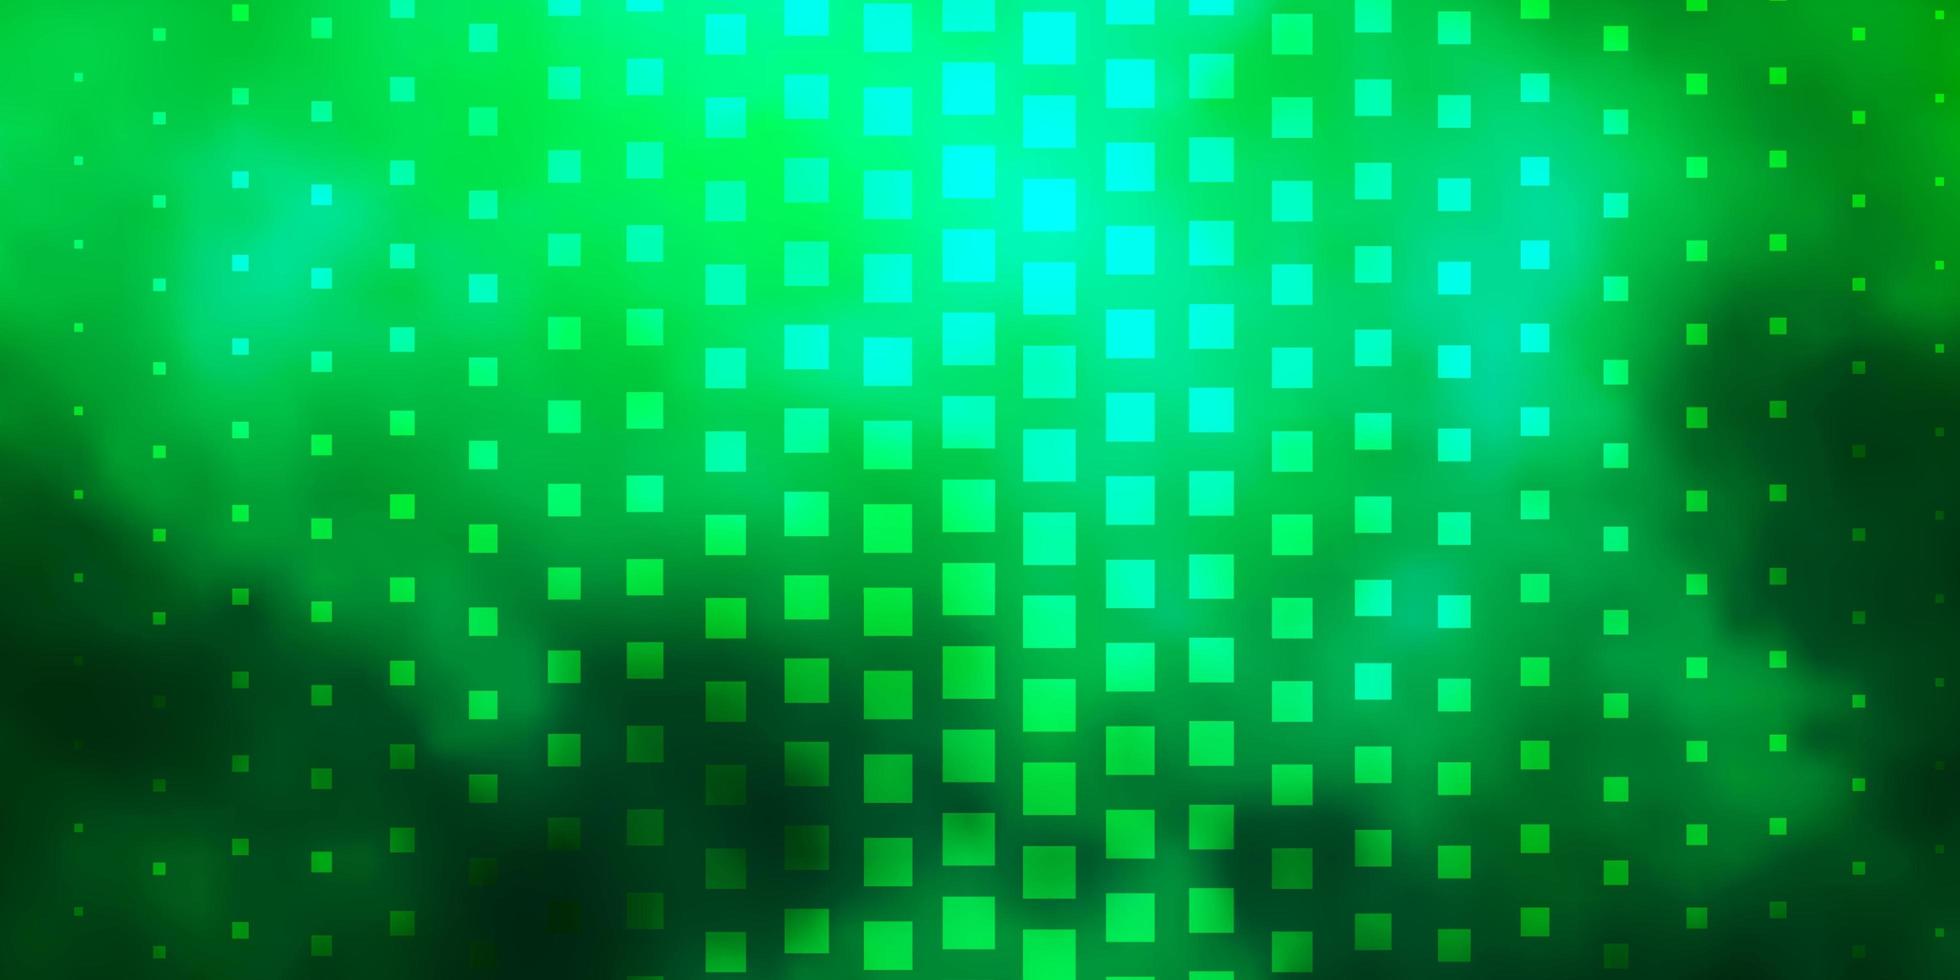 toile de fond de vecteur vert clair avec des rectangles